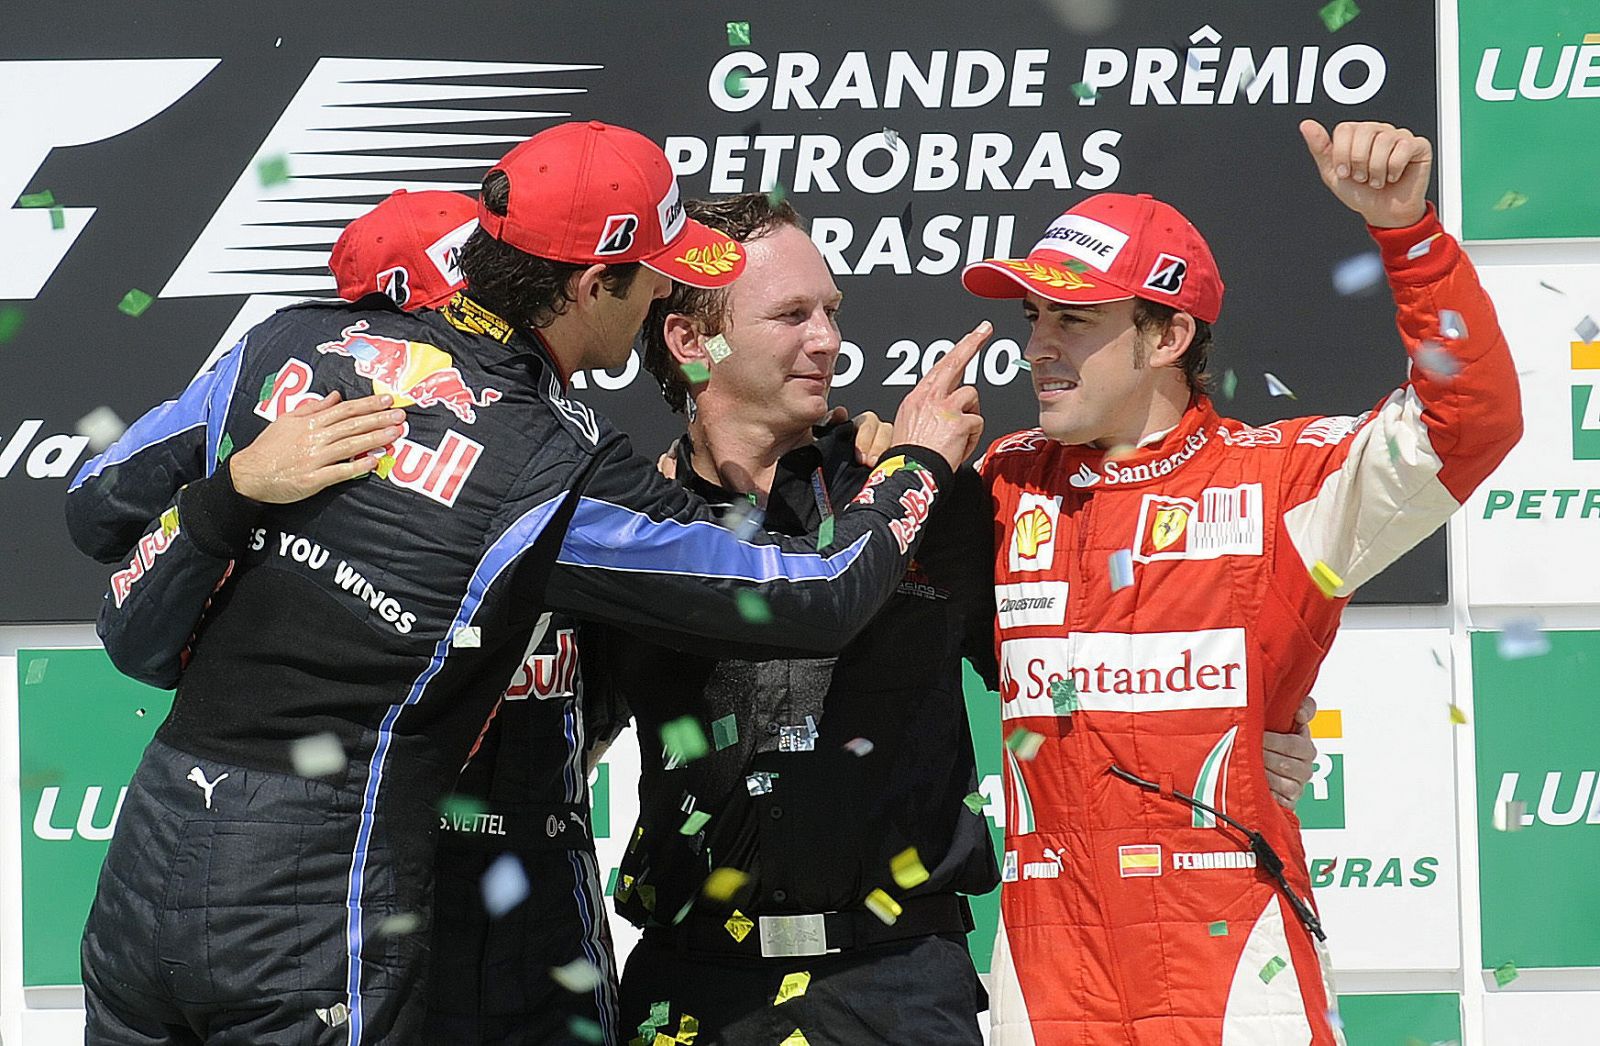 Fernando Alonso en el podio del Gran Premio de Brasil, penúltimo del campeonato 2010.